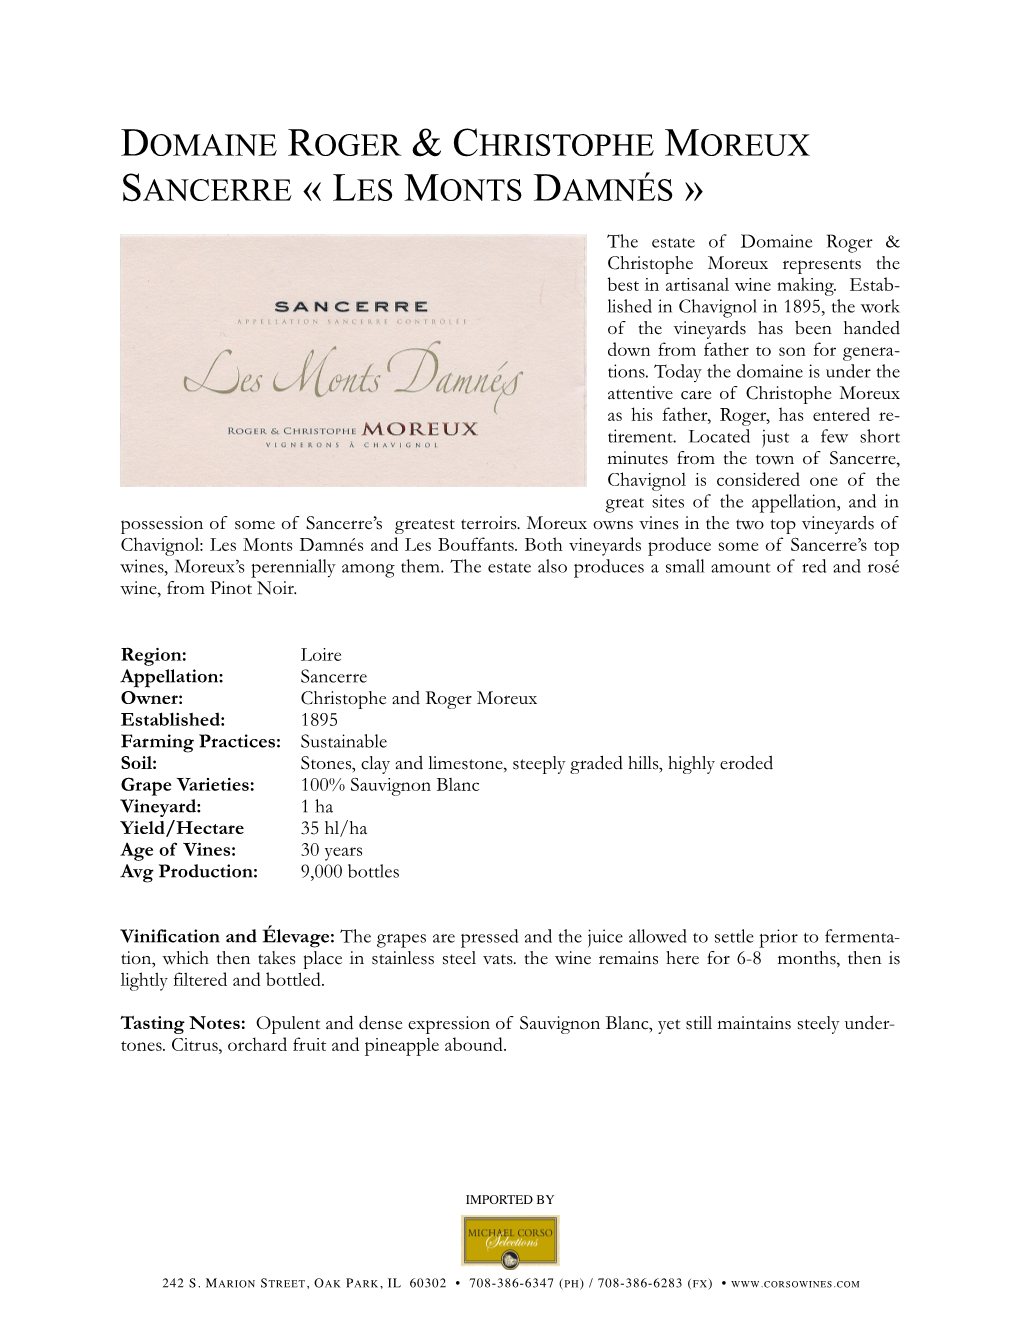 Domaine Roger & Christophe Moreux Sancerre « Les Monts Damnés